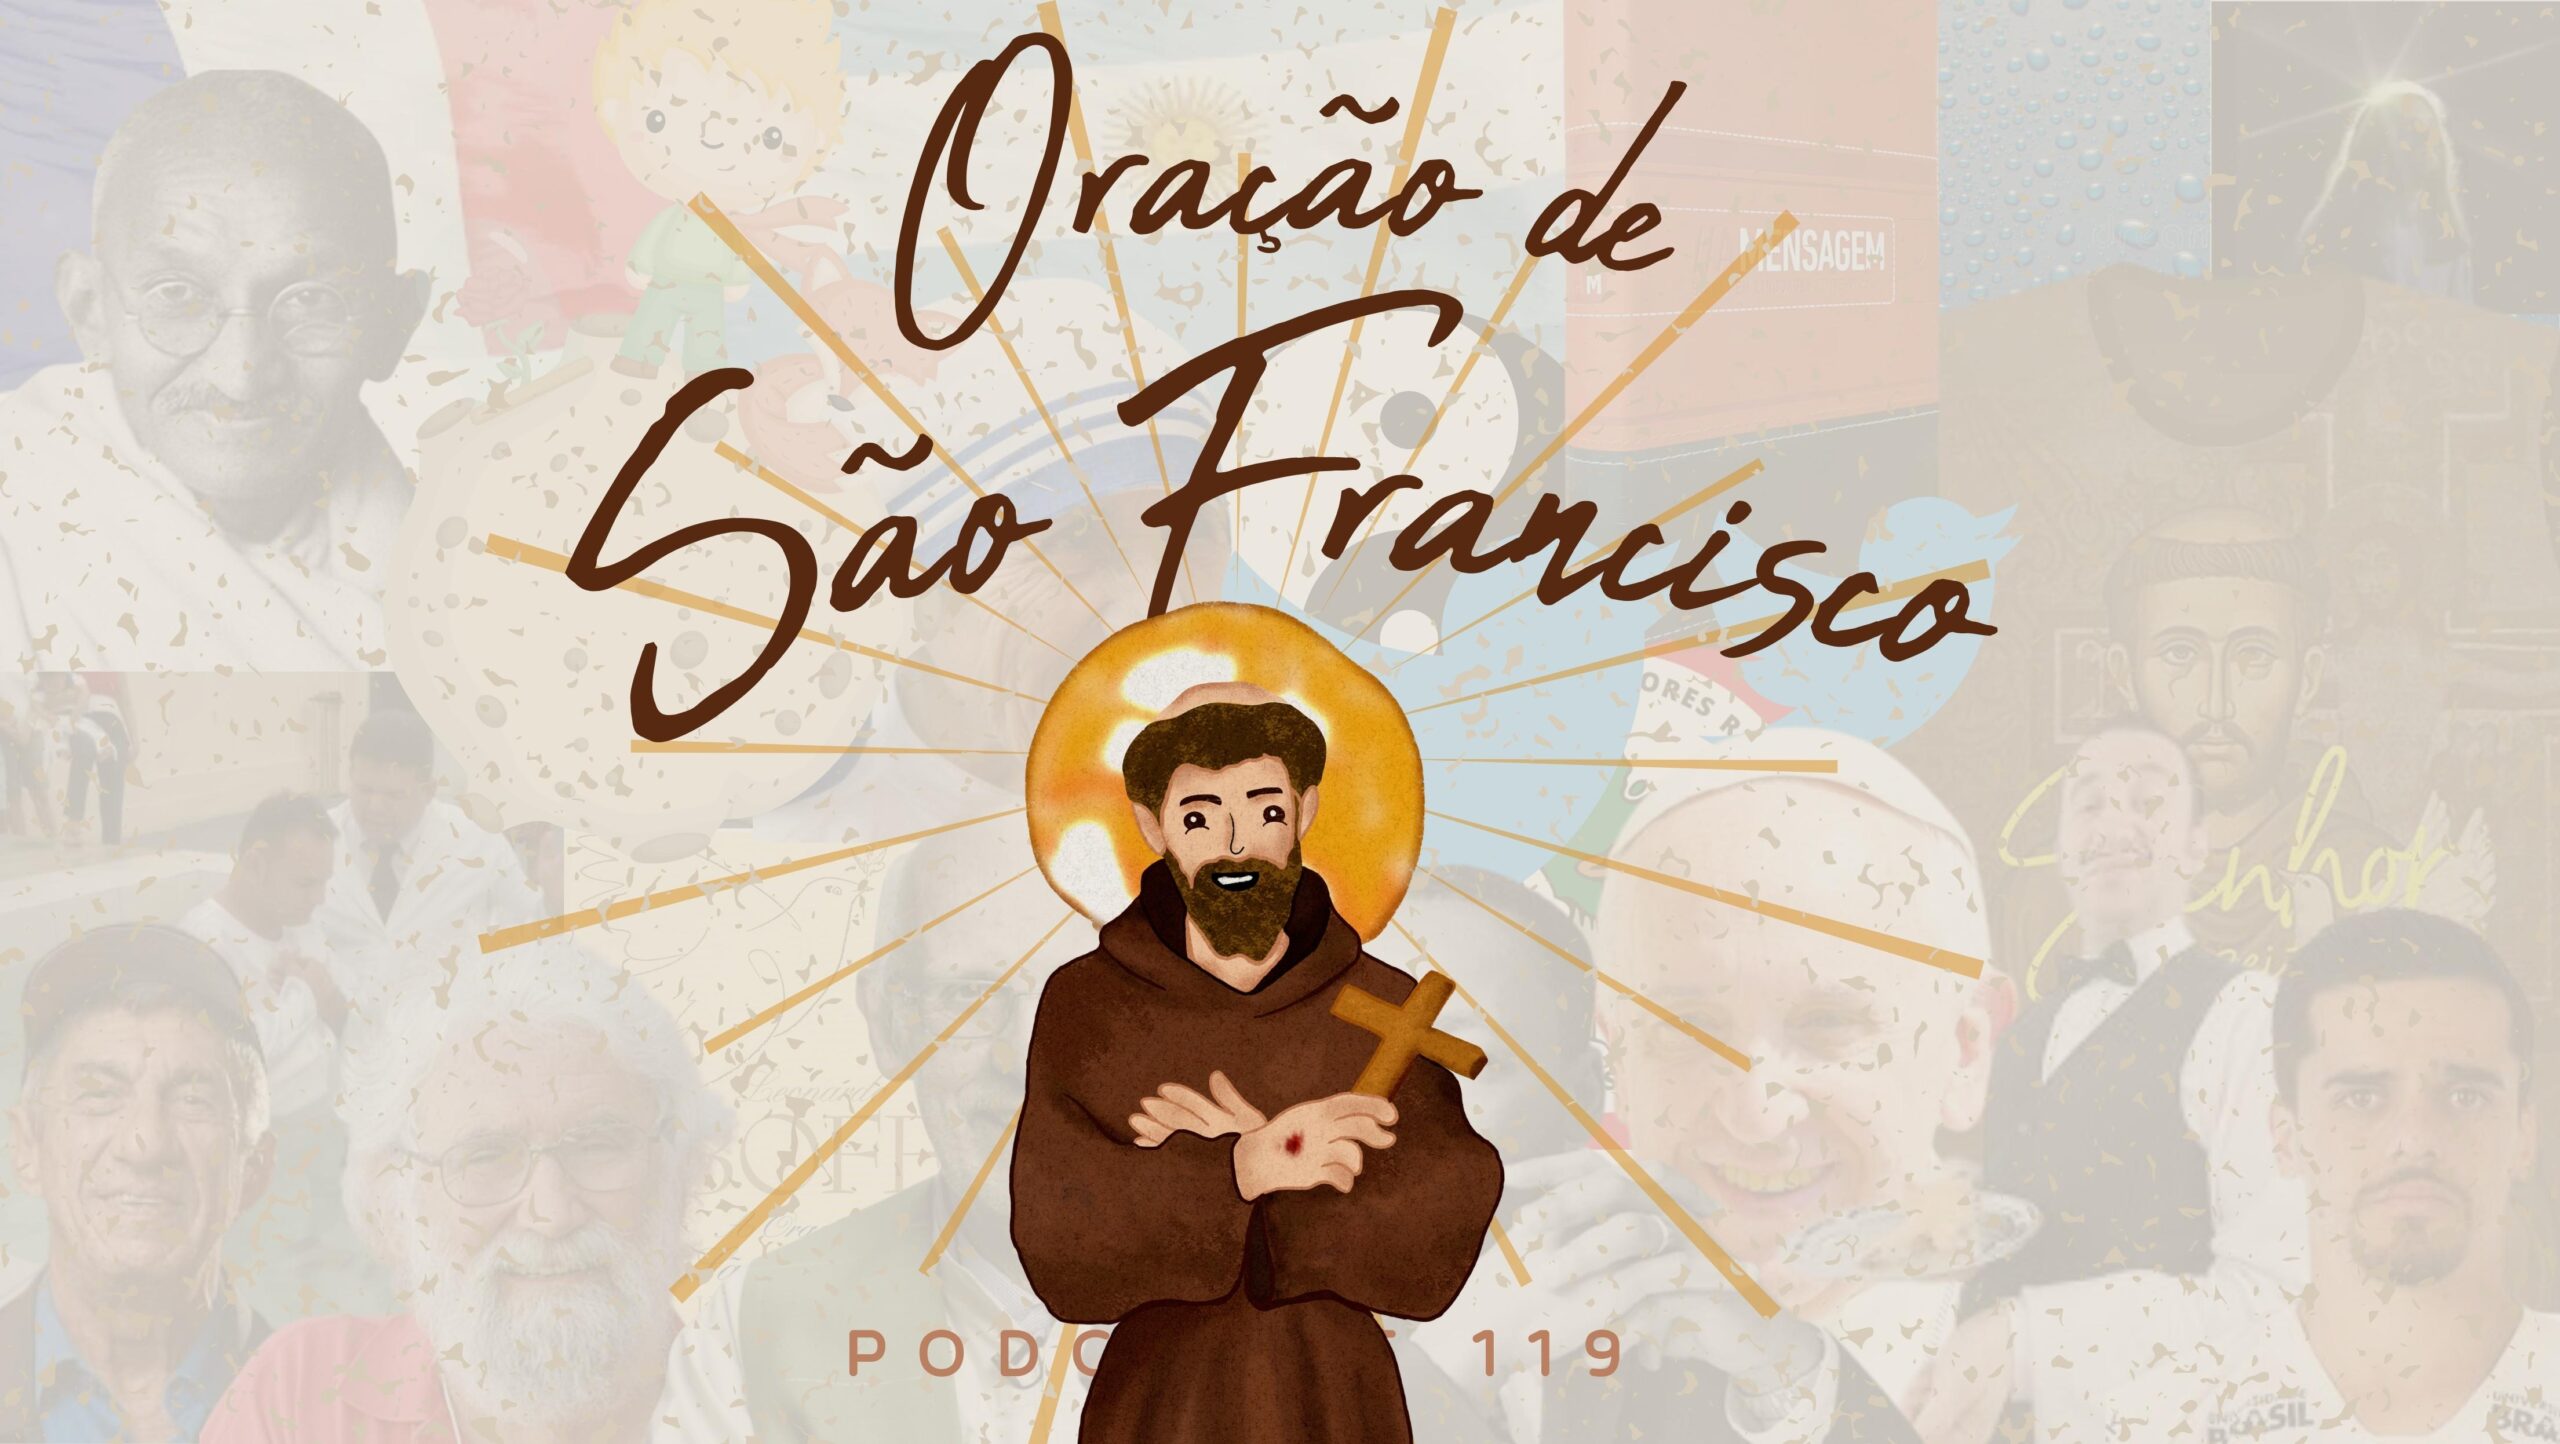 Fundo branco. Na frente o título do episódio "Oração de São Francisco" em marrom. No centro, ilustração de São Francisco. Atrás o número do episódio "119".